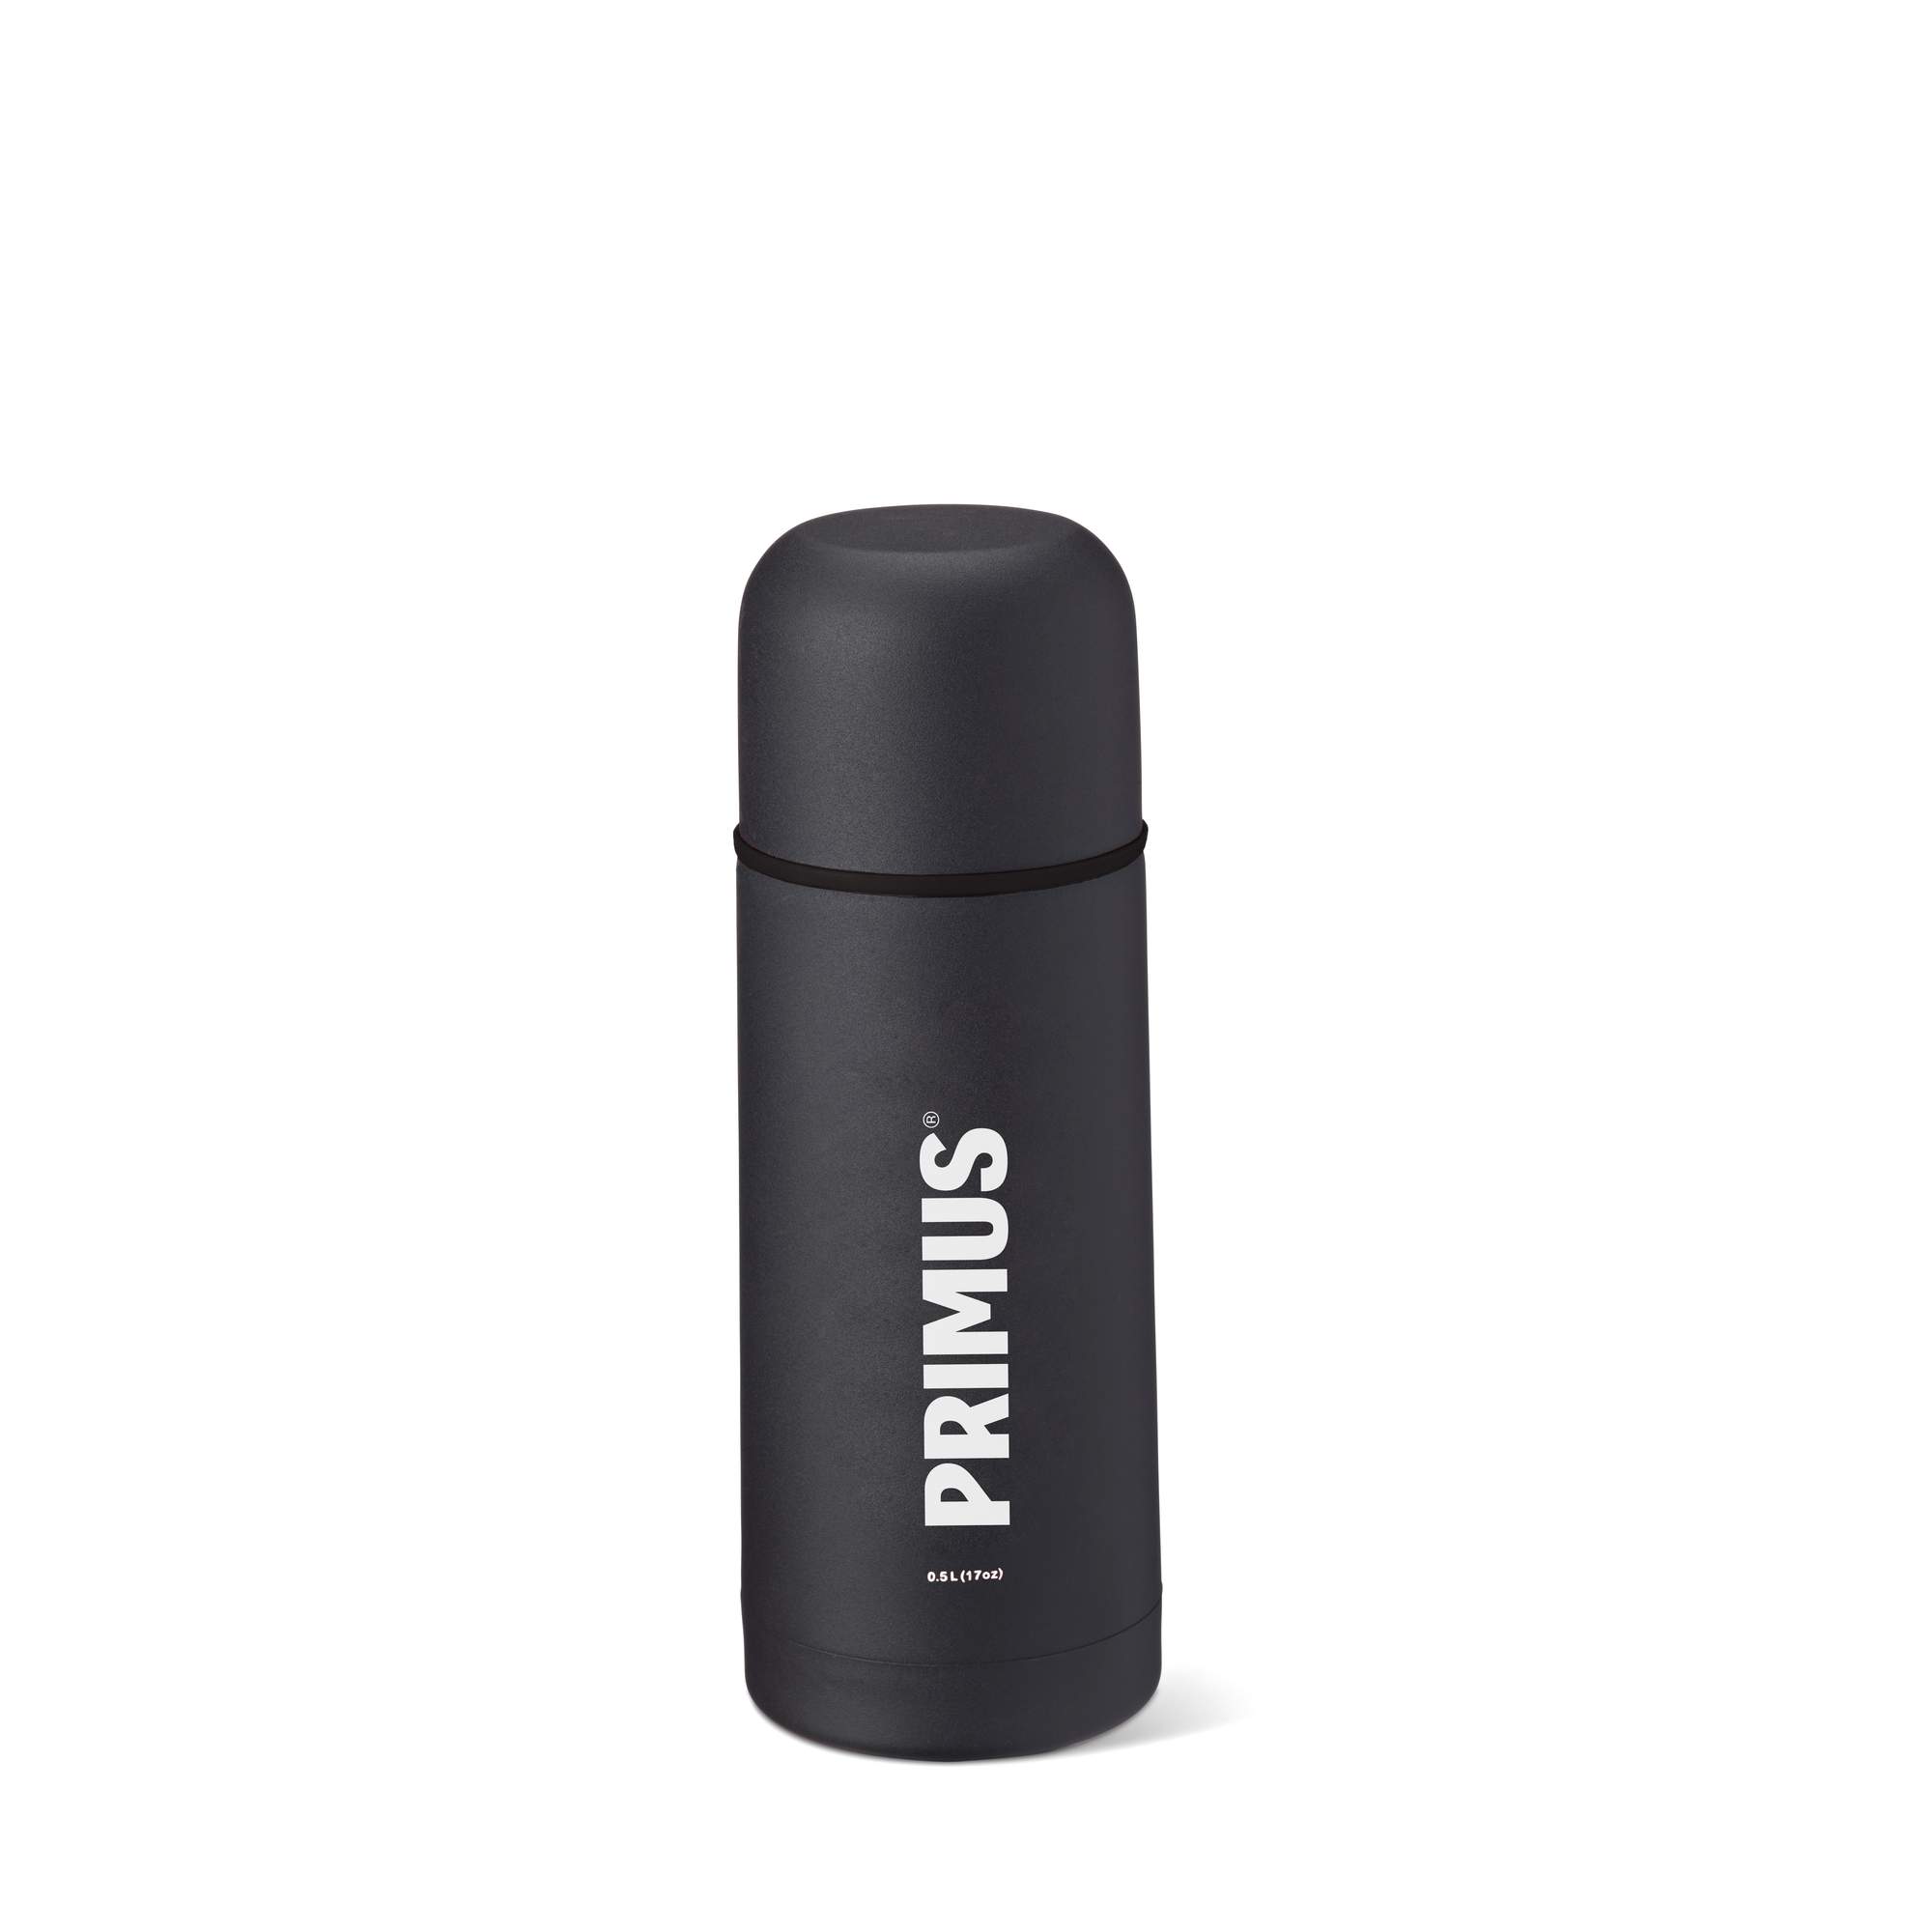 Immagine di Primus - Bottiglia isolante sottovuoto 500 ml